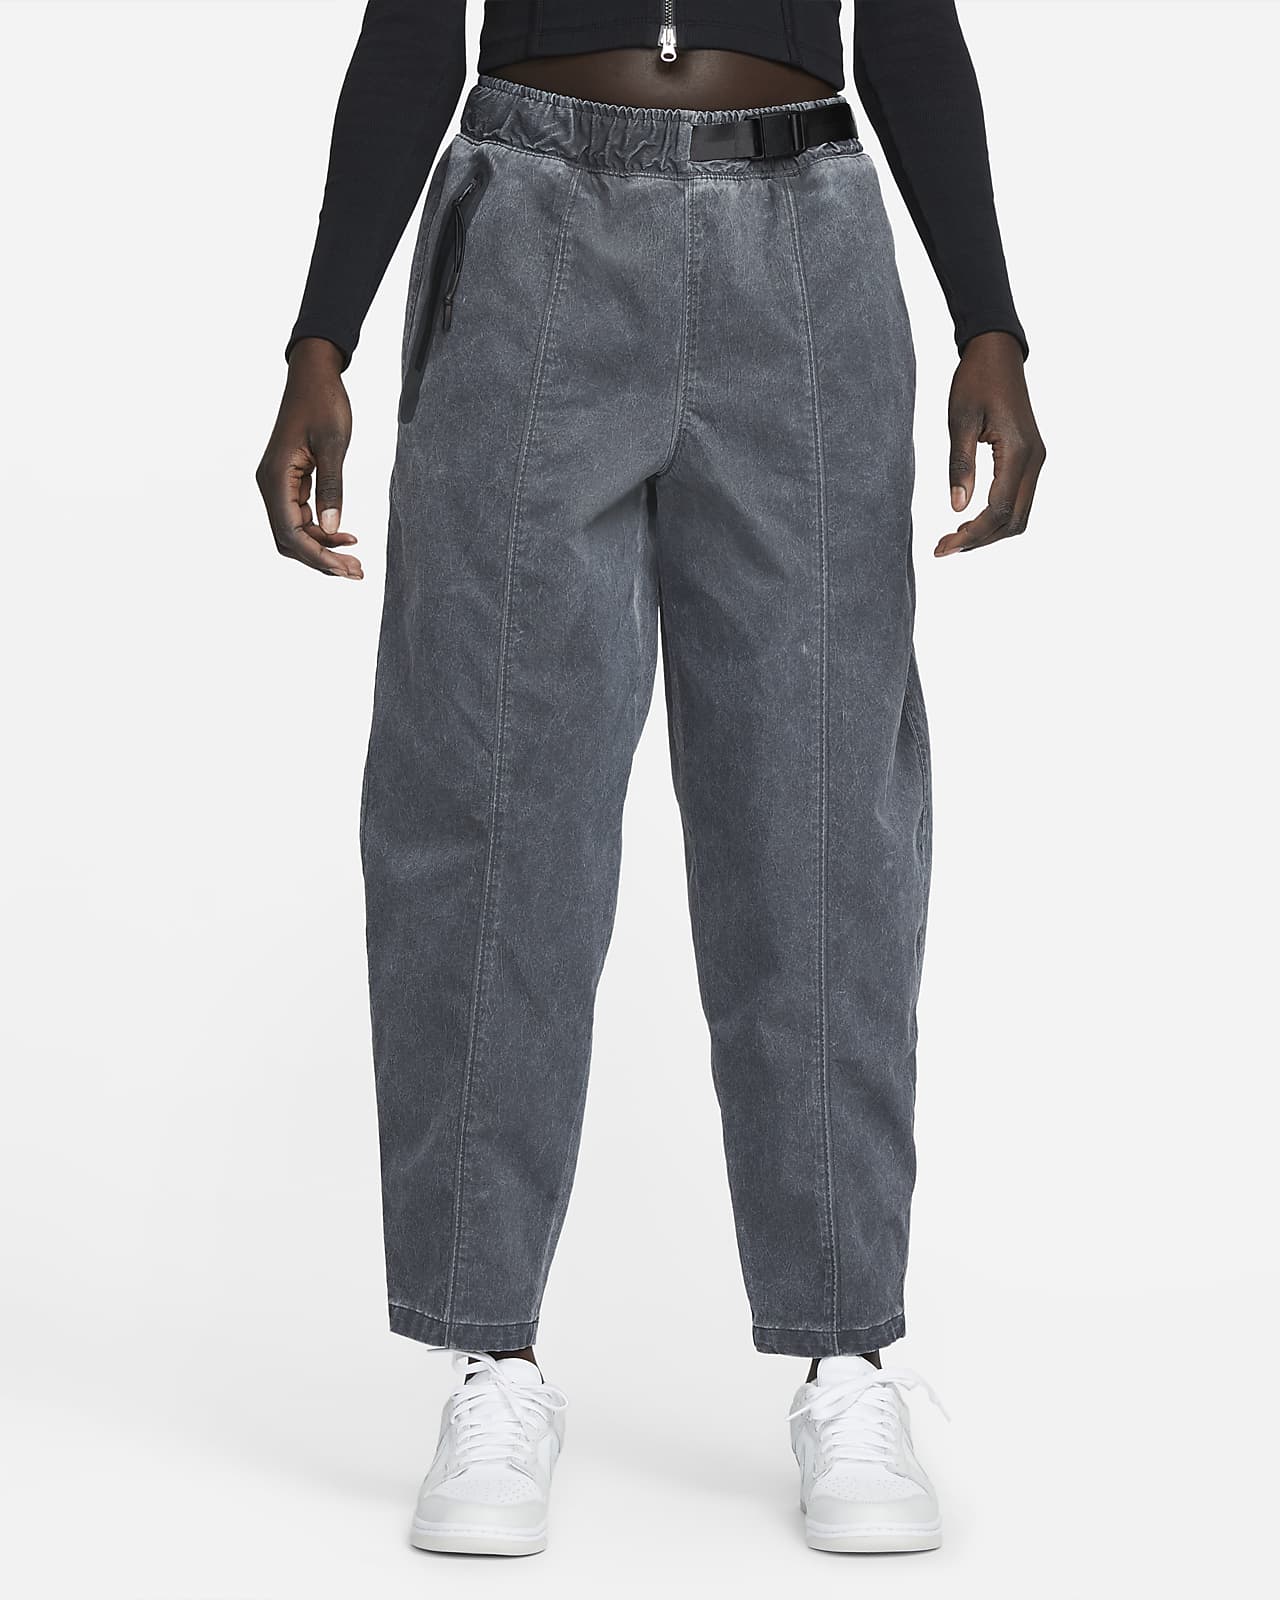 Nike Sportswear Dri-FIT Tech Pack Hose mit hohem Bund für Damen